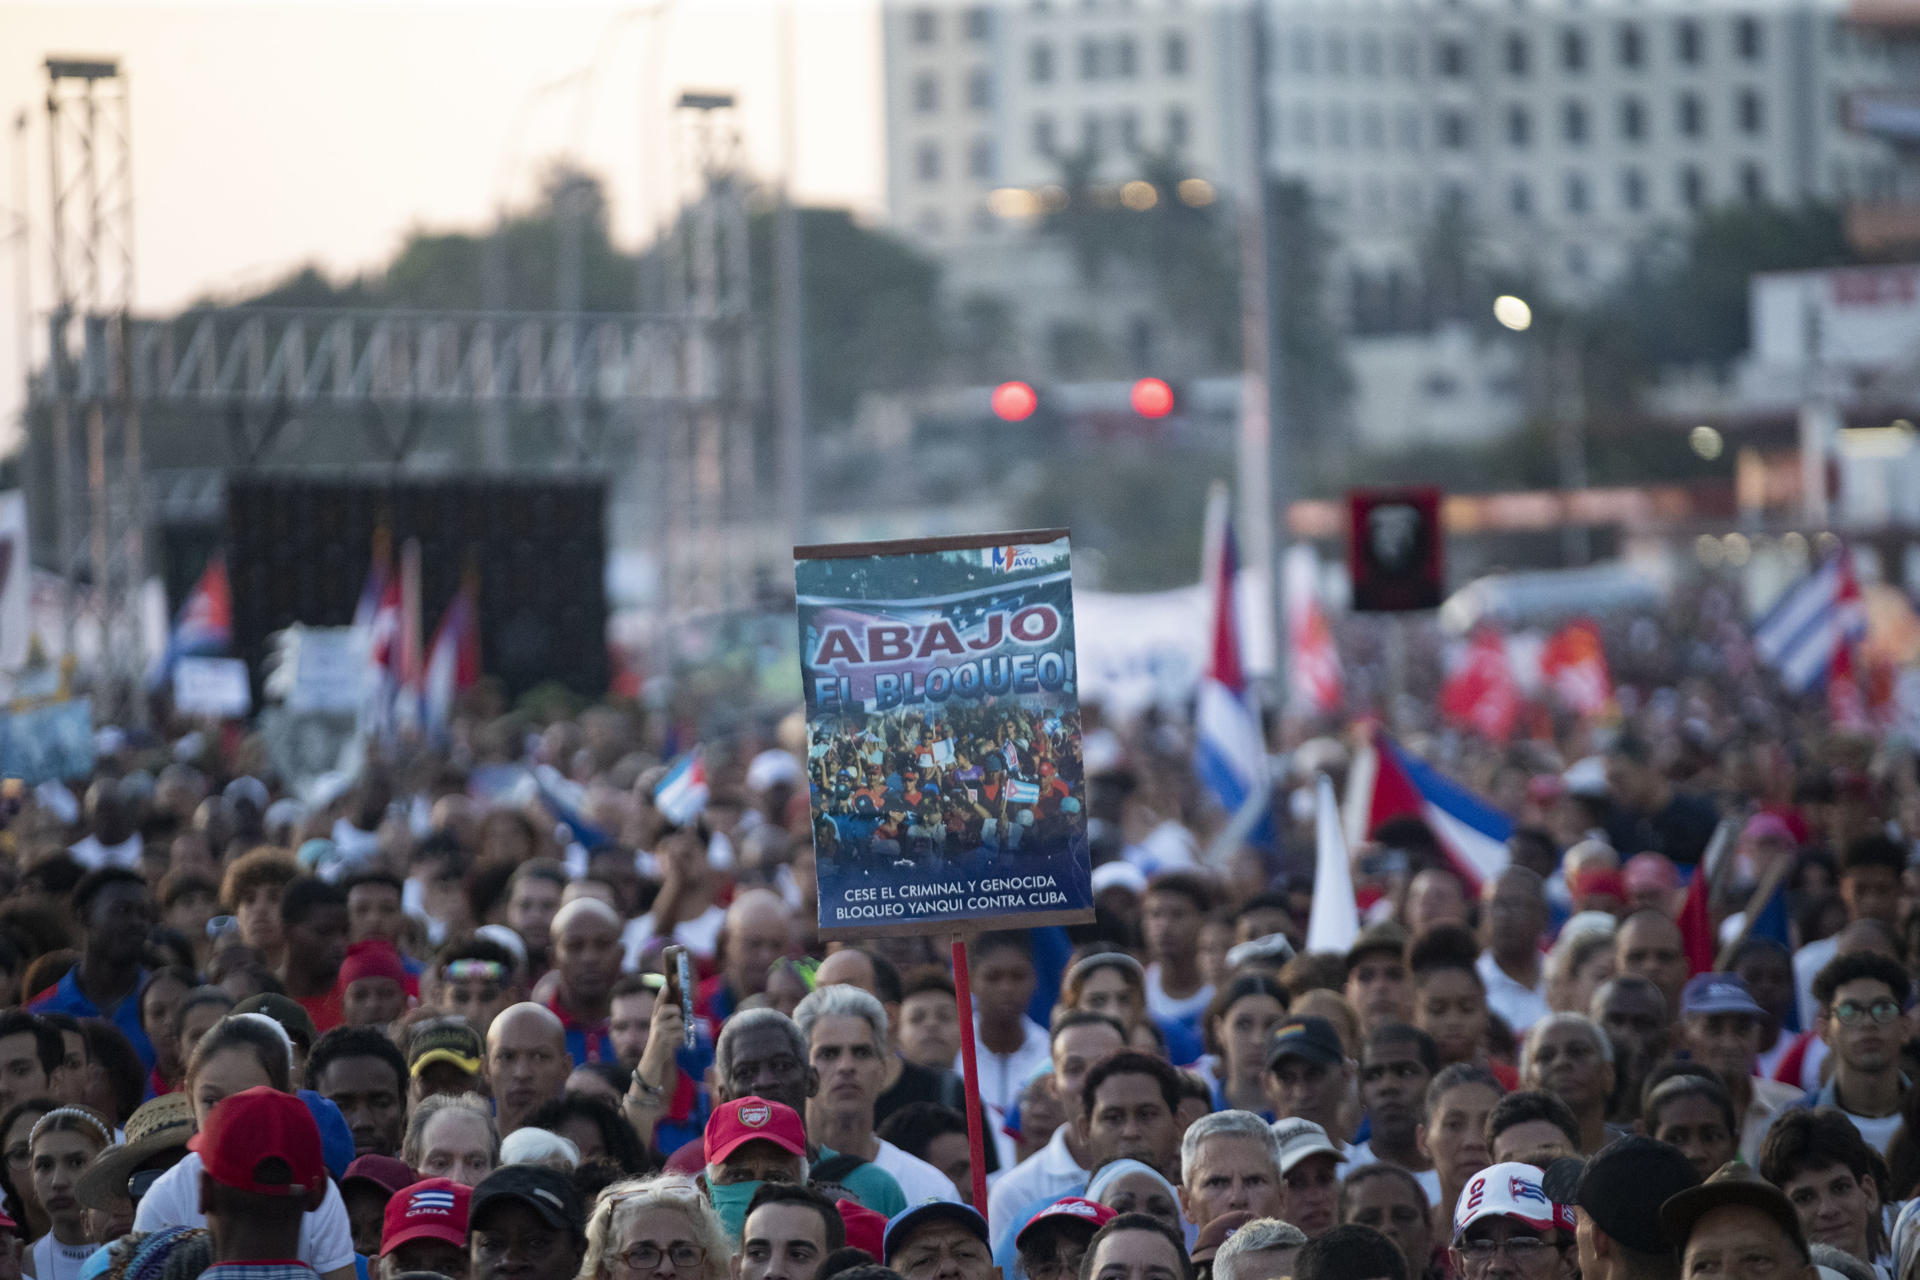 Fotografía de un cartel de protesta contra los bloqueos estadounidenses a Cuba este miércoles primero de mayo en la Tribuna Antiimperialista durante el inicio de los actos conmemorativos del Día Internacional de los Trabajadores, en La Habana (Cuba). EFE/ Yander Zamora